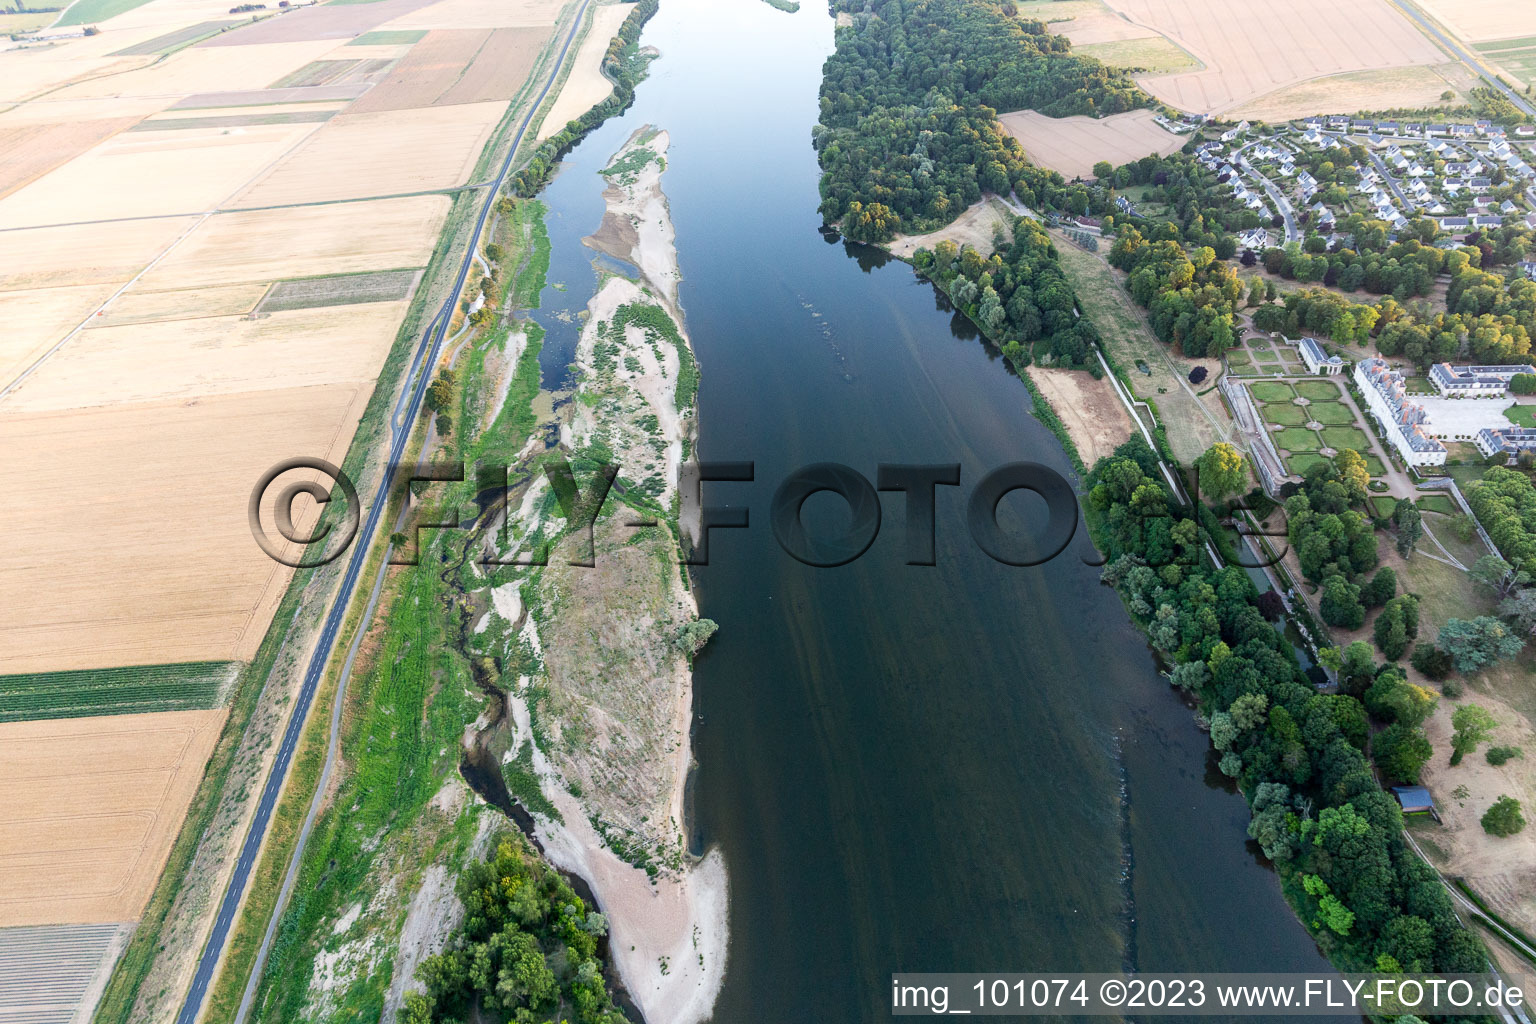 Menars im Bundesland Loir-et-Cher, Frankreich von der Drohne aus gesehen